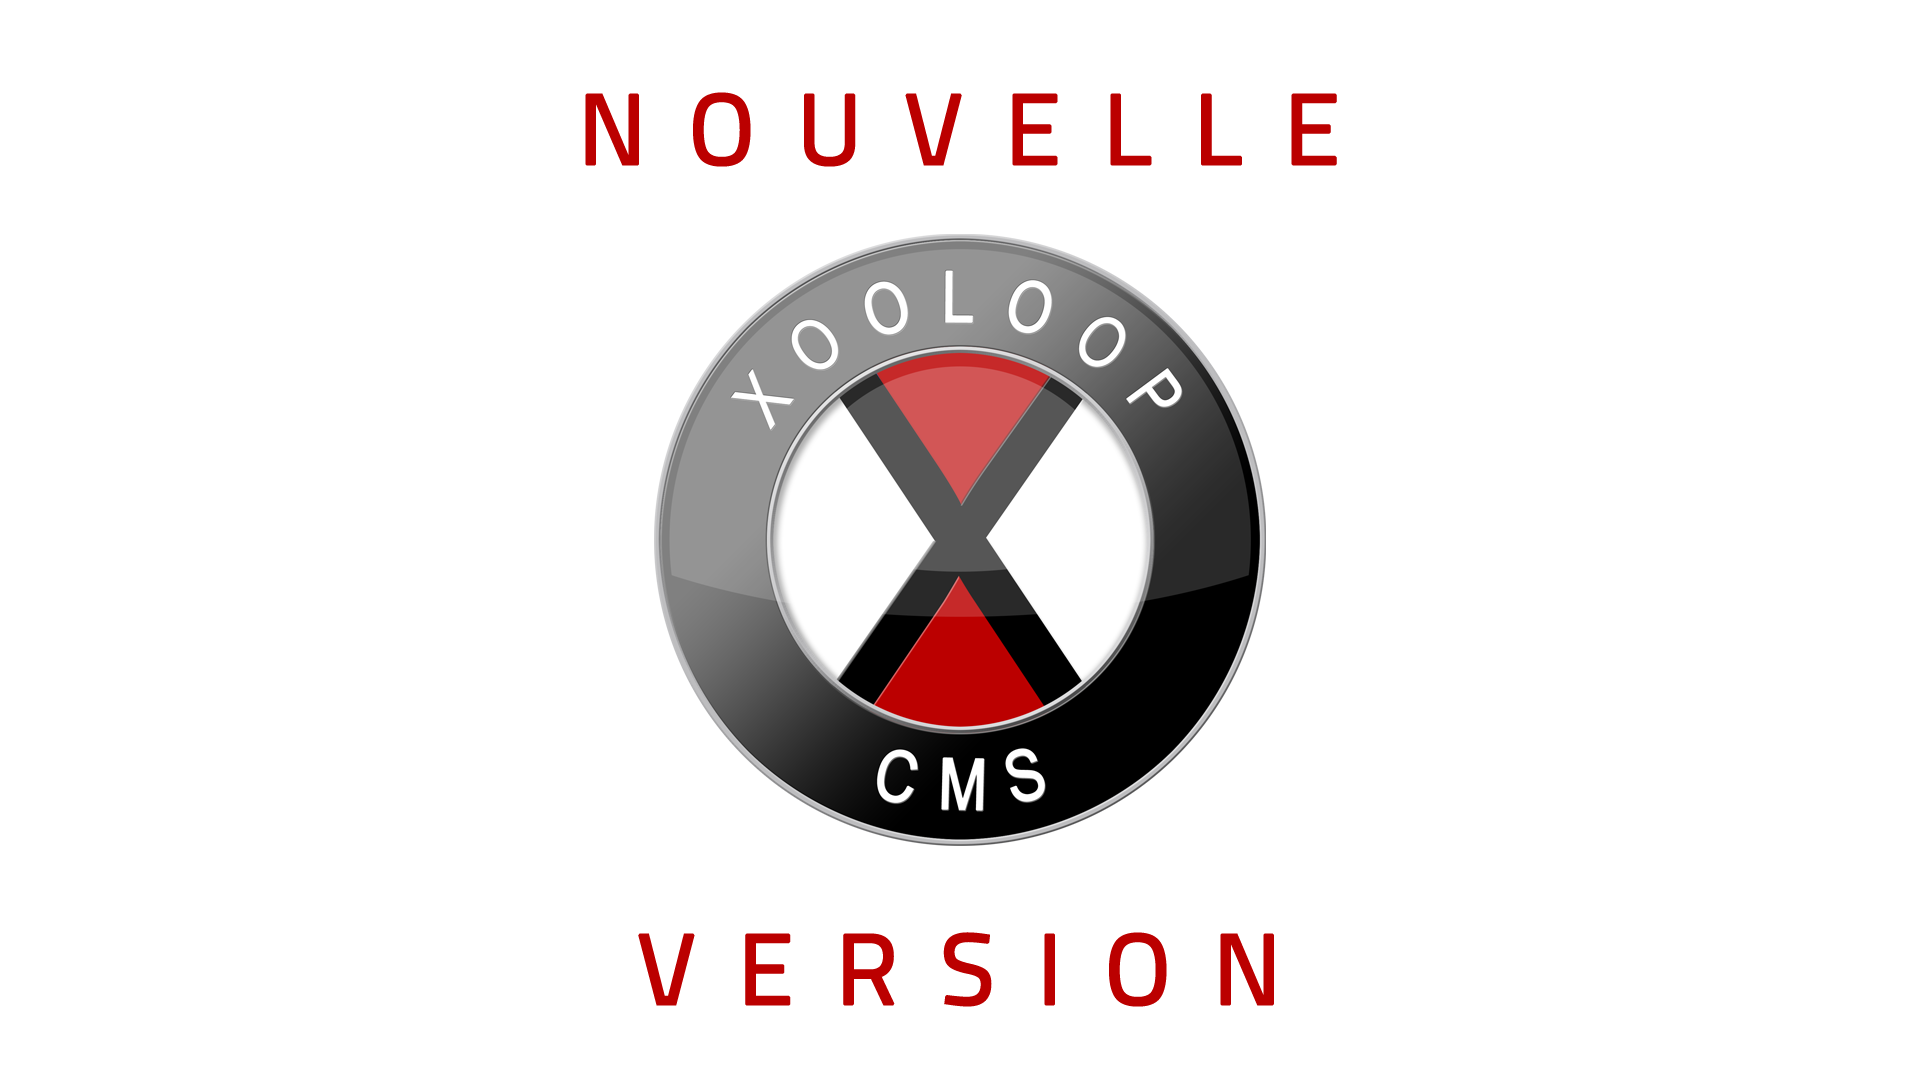 Nouvelle version de Xooloop CMS (v3.5.0)